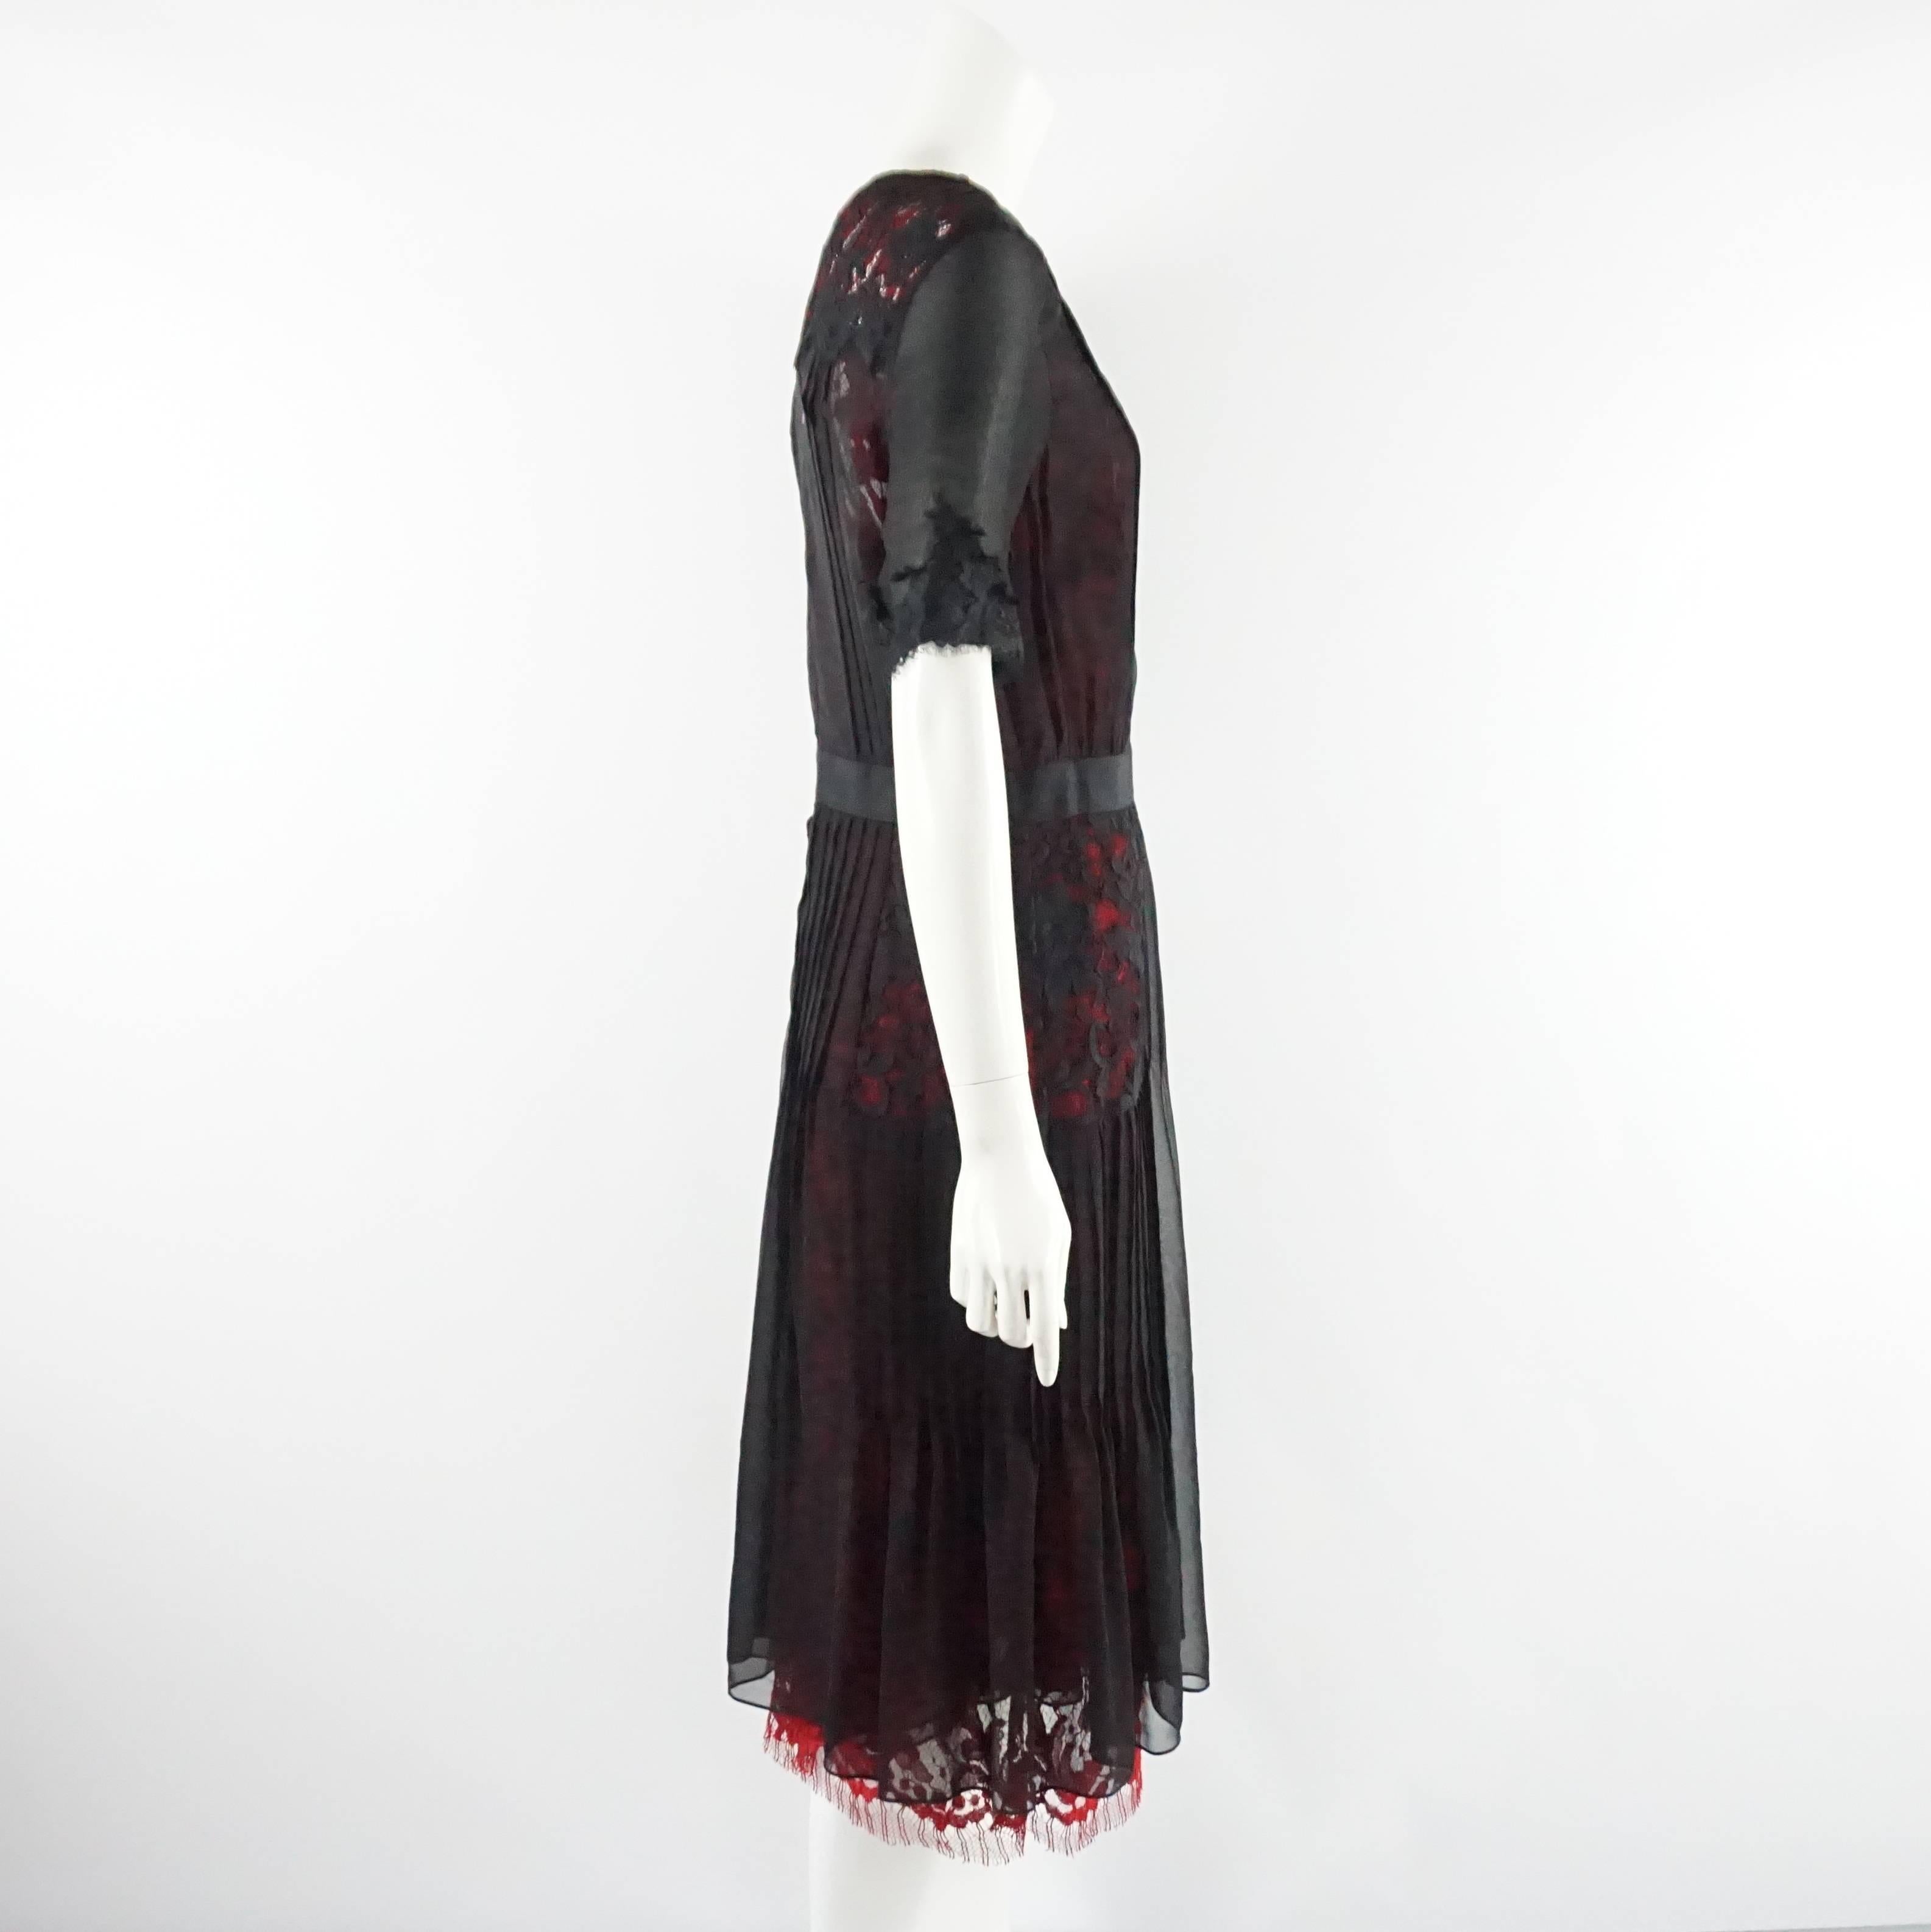 Cette robe Oscar de la Renta est noire avec une sous-couche rouge. Il est fait de mousseline de soie et de dentelle et comporte un ruban noir autour de la taille. Cette robe est en excellent état et possède encore son étiquette. 

Mesures
D'épaule à